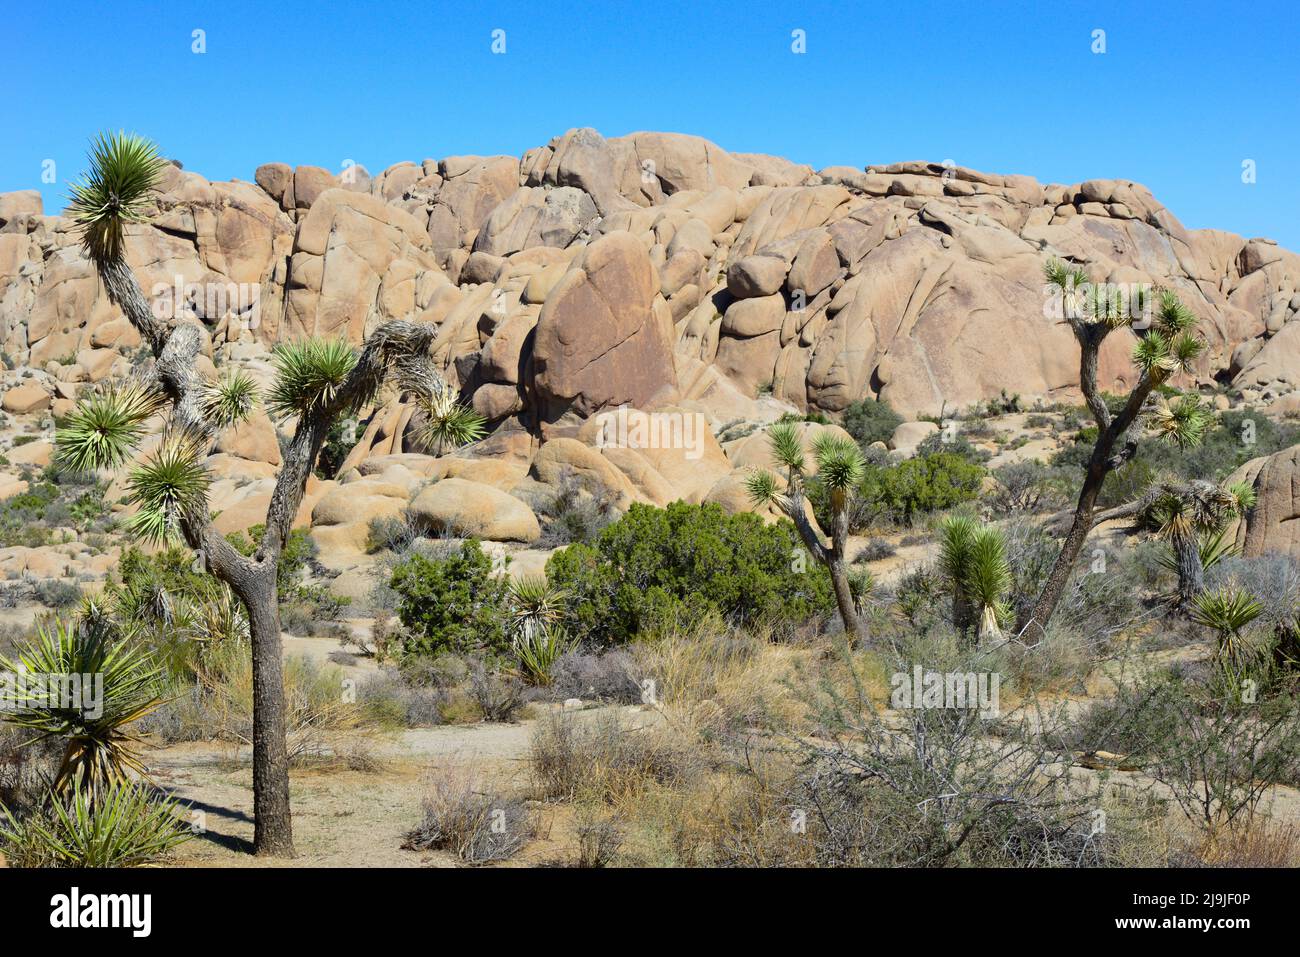 Le Joshua Tree unique avec son tronc poilu et ses amas de pointes parmi les rochers du parc national de Joshua Tree, dans le désert de Mojave, CA Banque D'Images